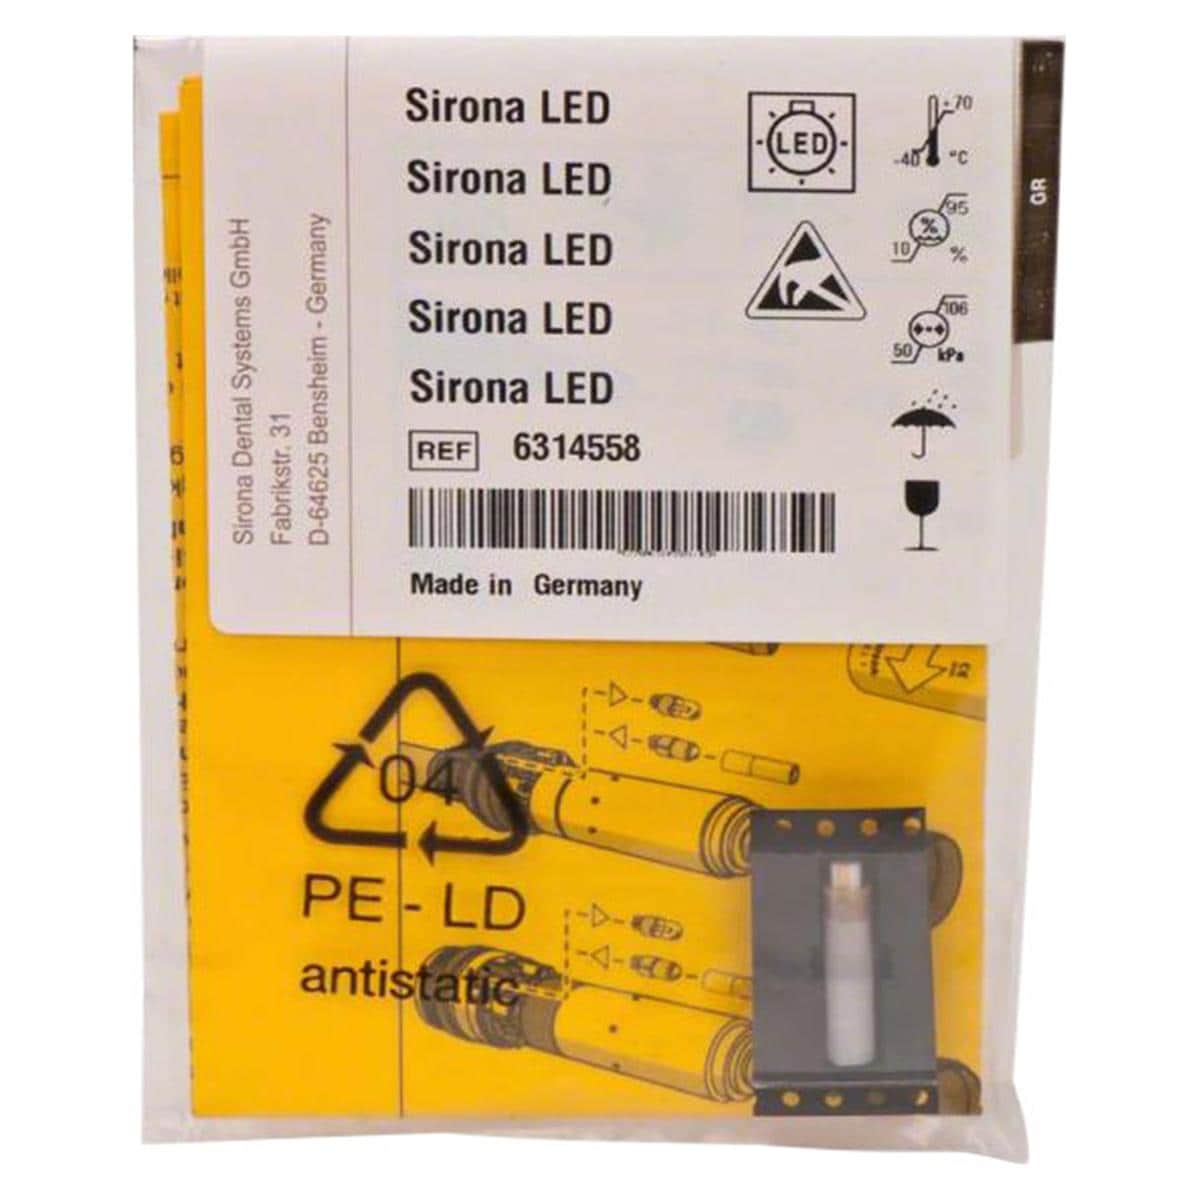 Sirona LED - LED-Lampe